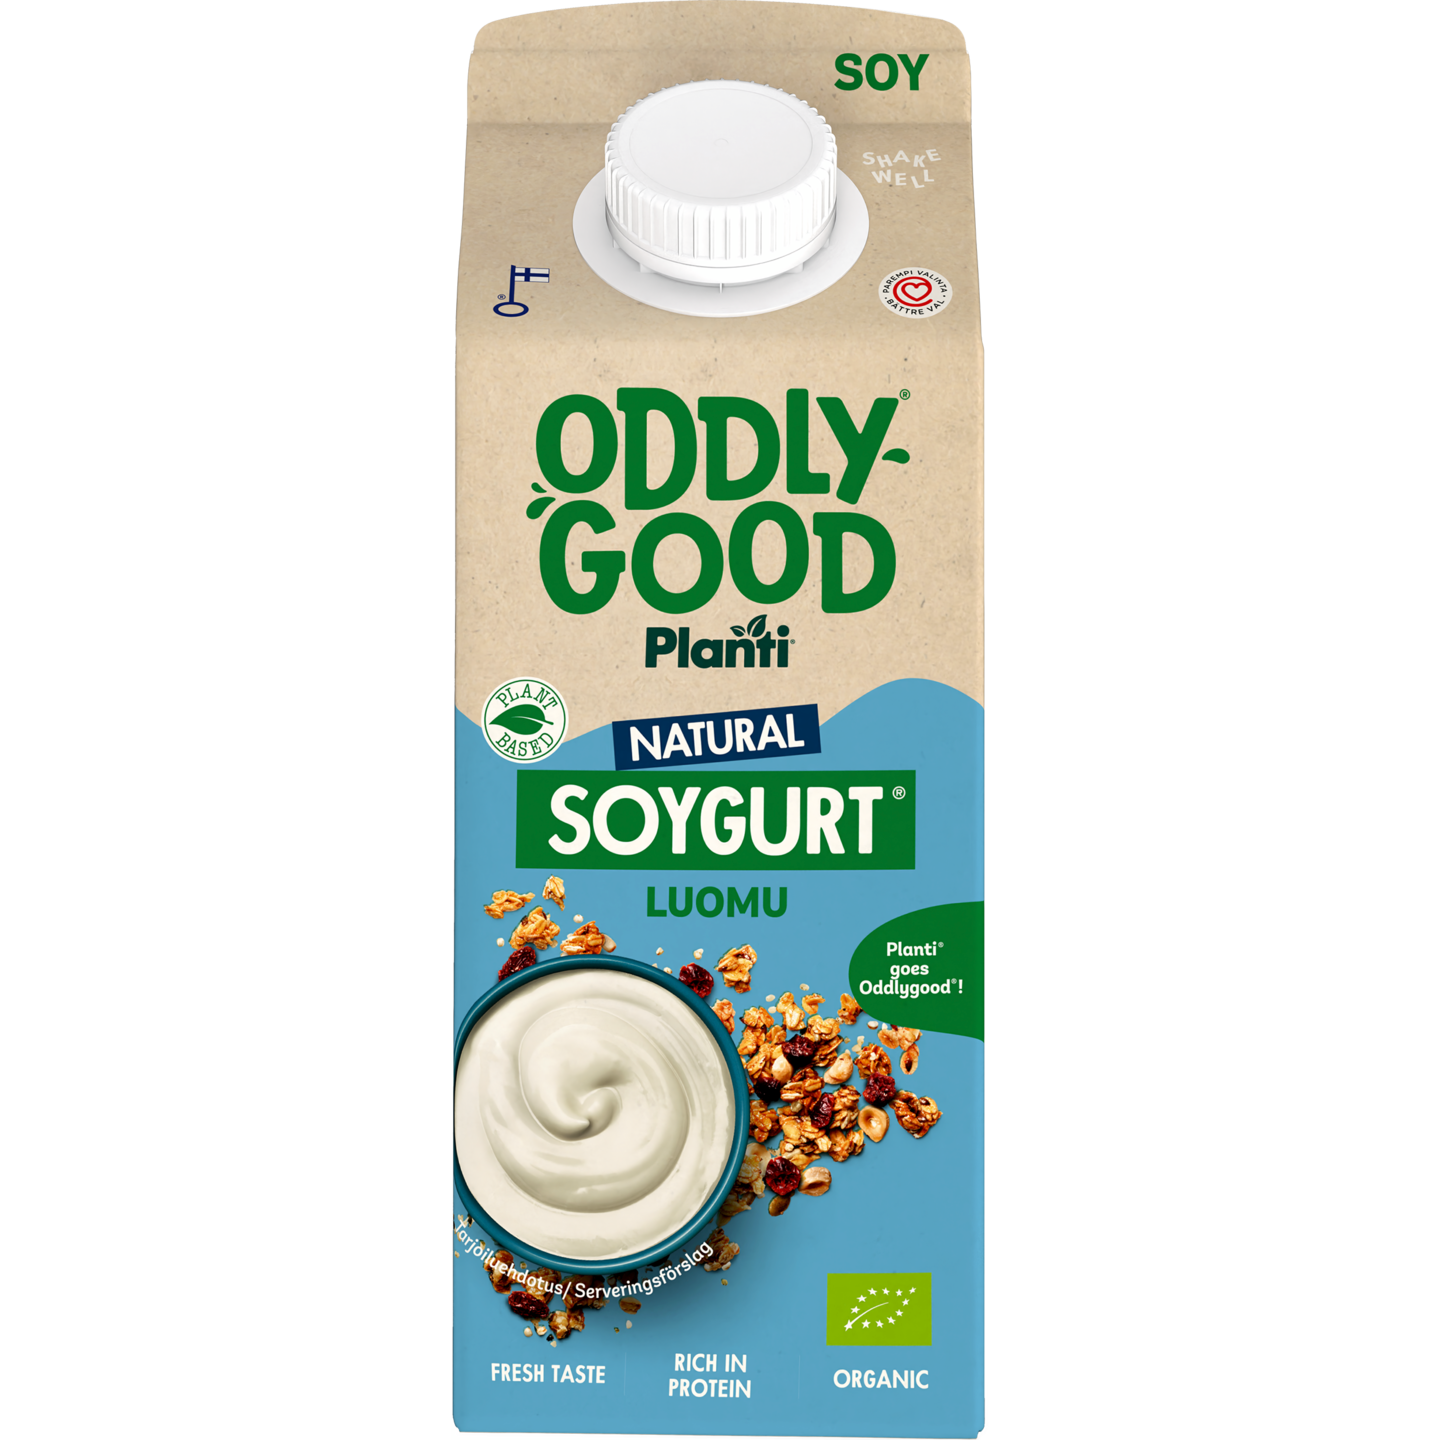 Oddlygood Planti soygurt 750g natural luomu